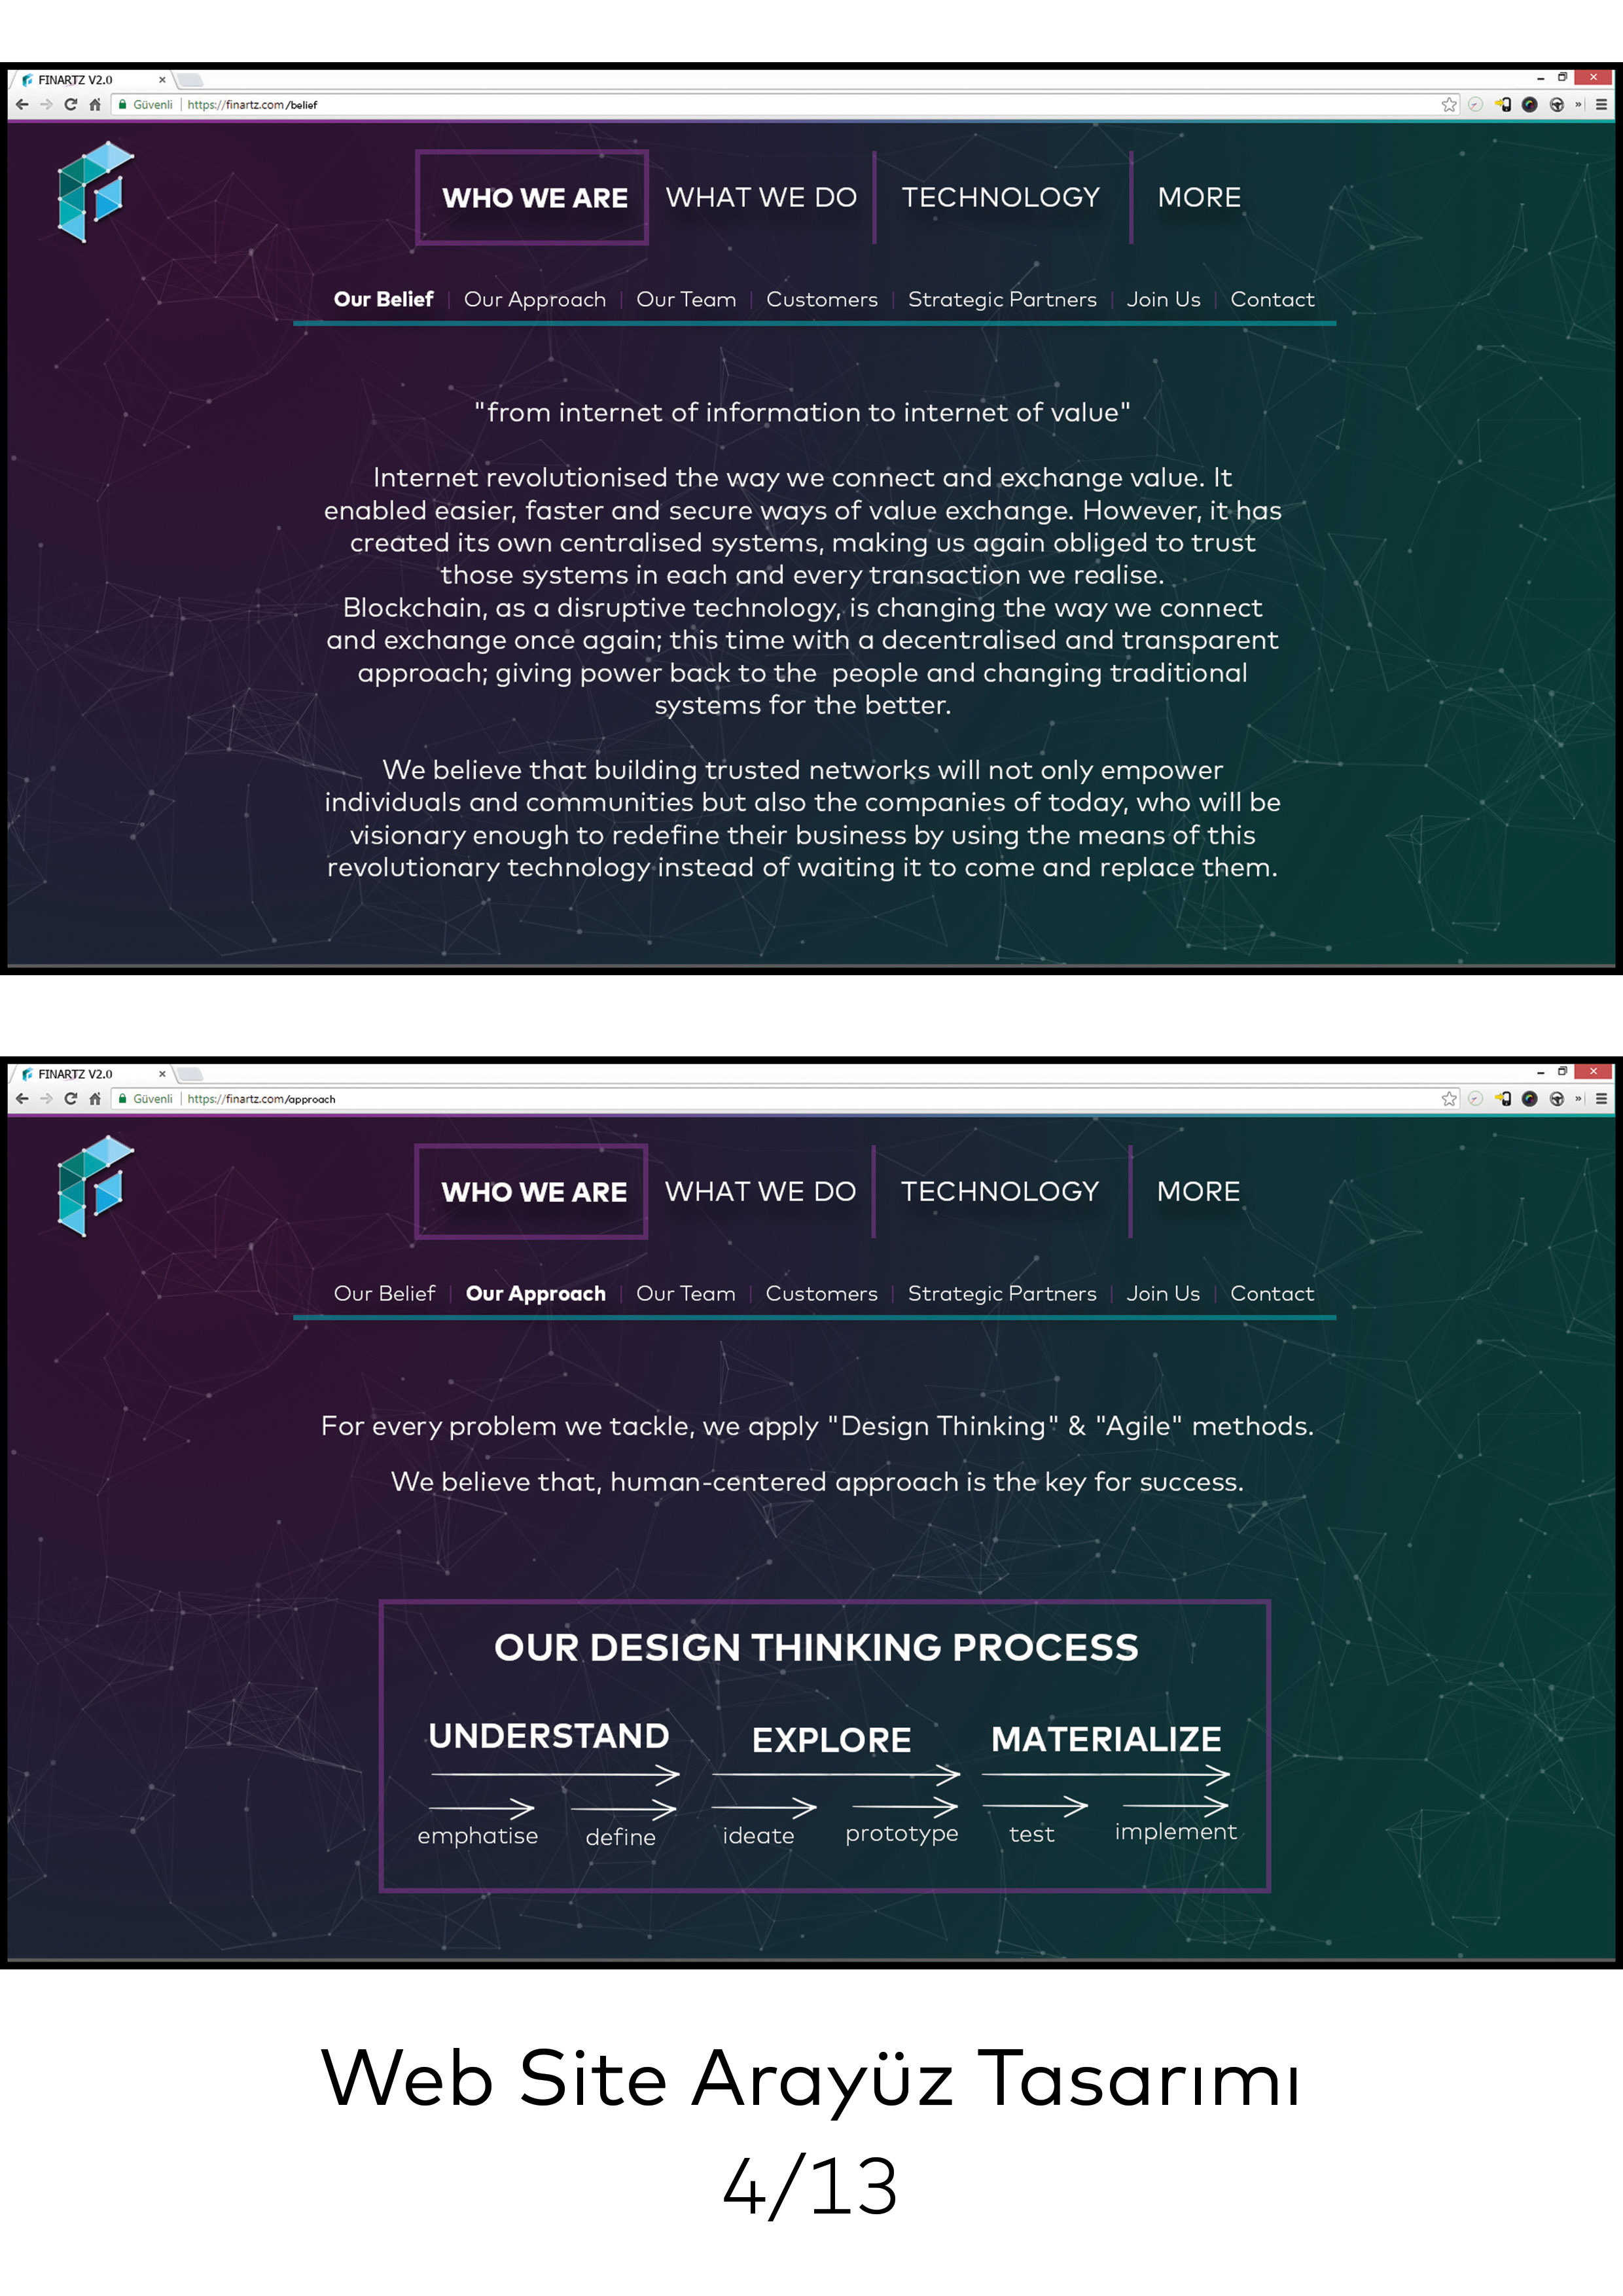 Finartz Bilgi Teknolojileri A.Ş.'nin web sayfası finartz.com için yapmış olduğum arayüz tasarımları.